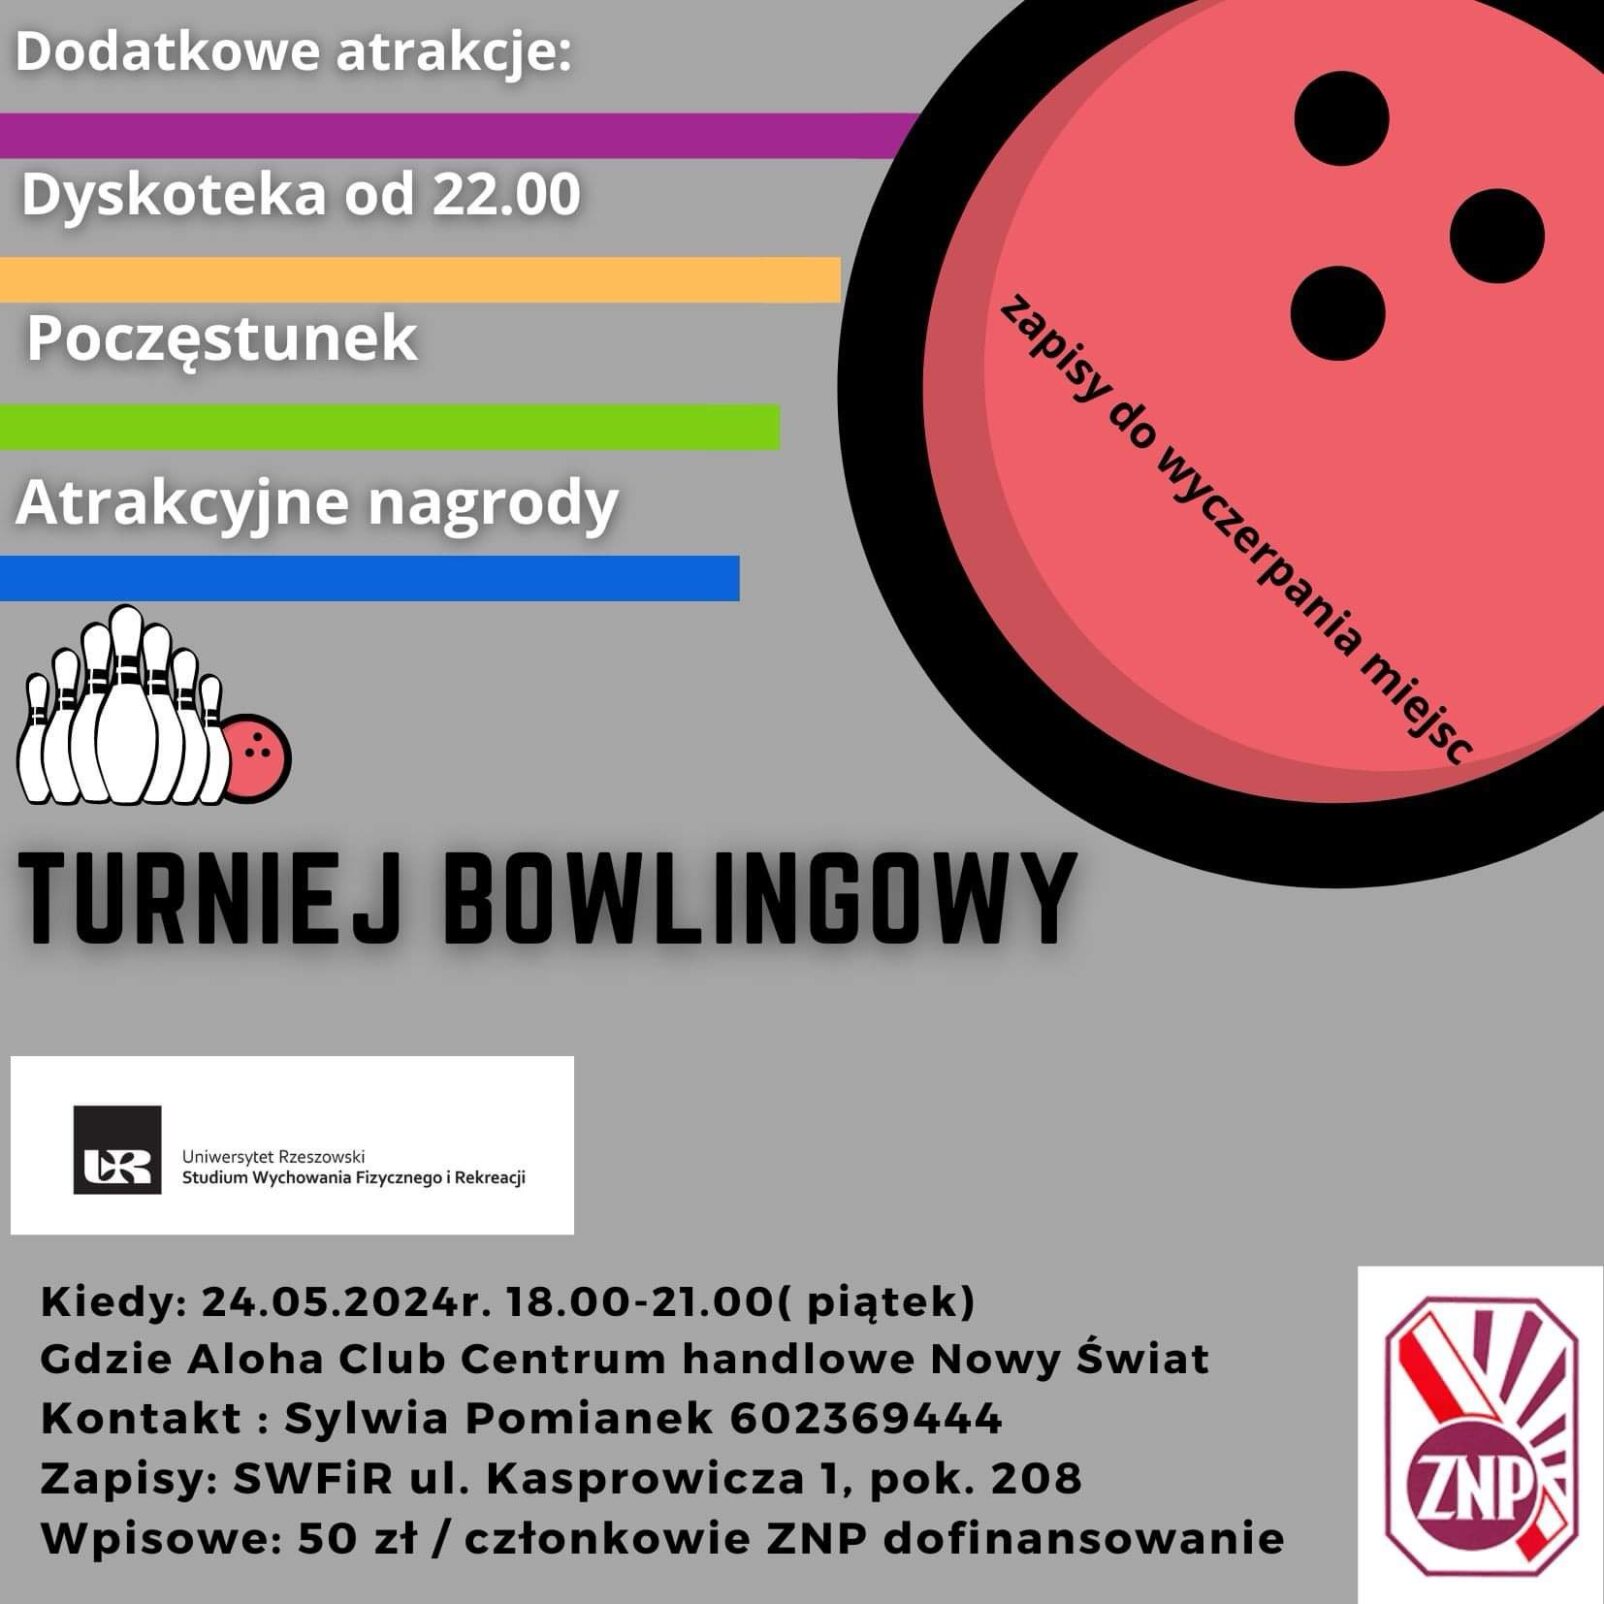 Zaproszenie na turniej bowlingowy w dniu 24.05.2024r. w godzinach 18:00-21:00 (piątek) w Aloha Club Centrum handlowe Nowy świat